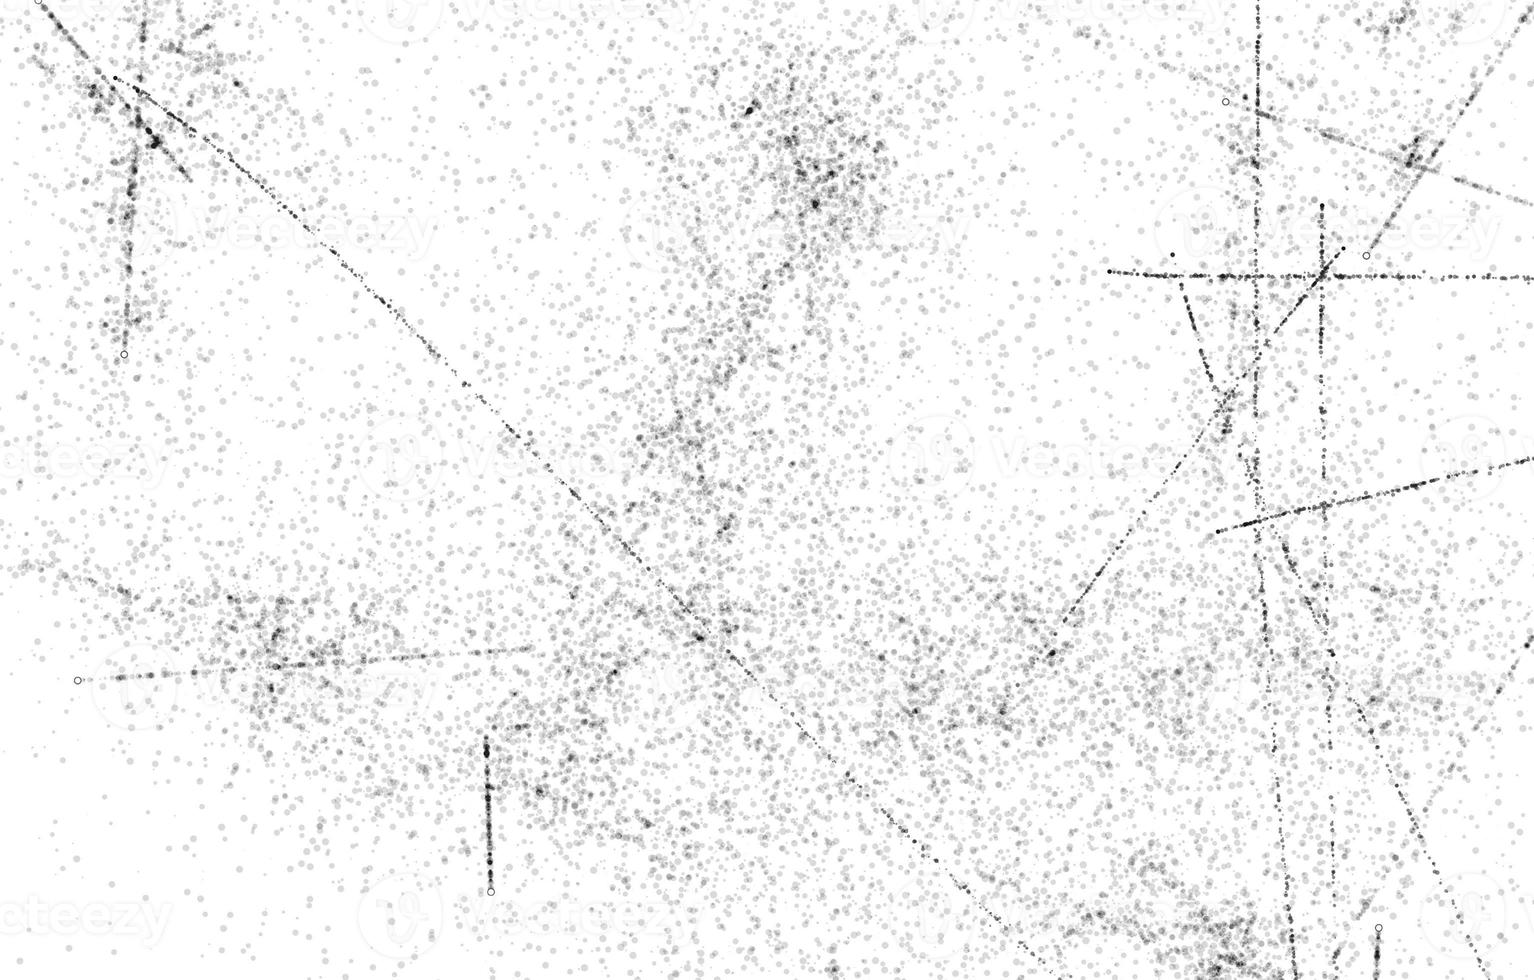 poussière et arrière-plans texturés rayés. fond de mur blanc et noir grunge. arrière-plan de détresse de superposition de poussière désordonnée sombre. facile à créer abstrait pointillé, rayé photo